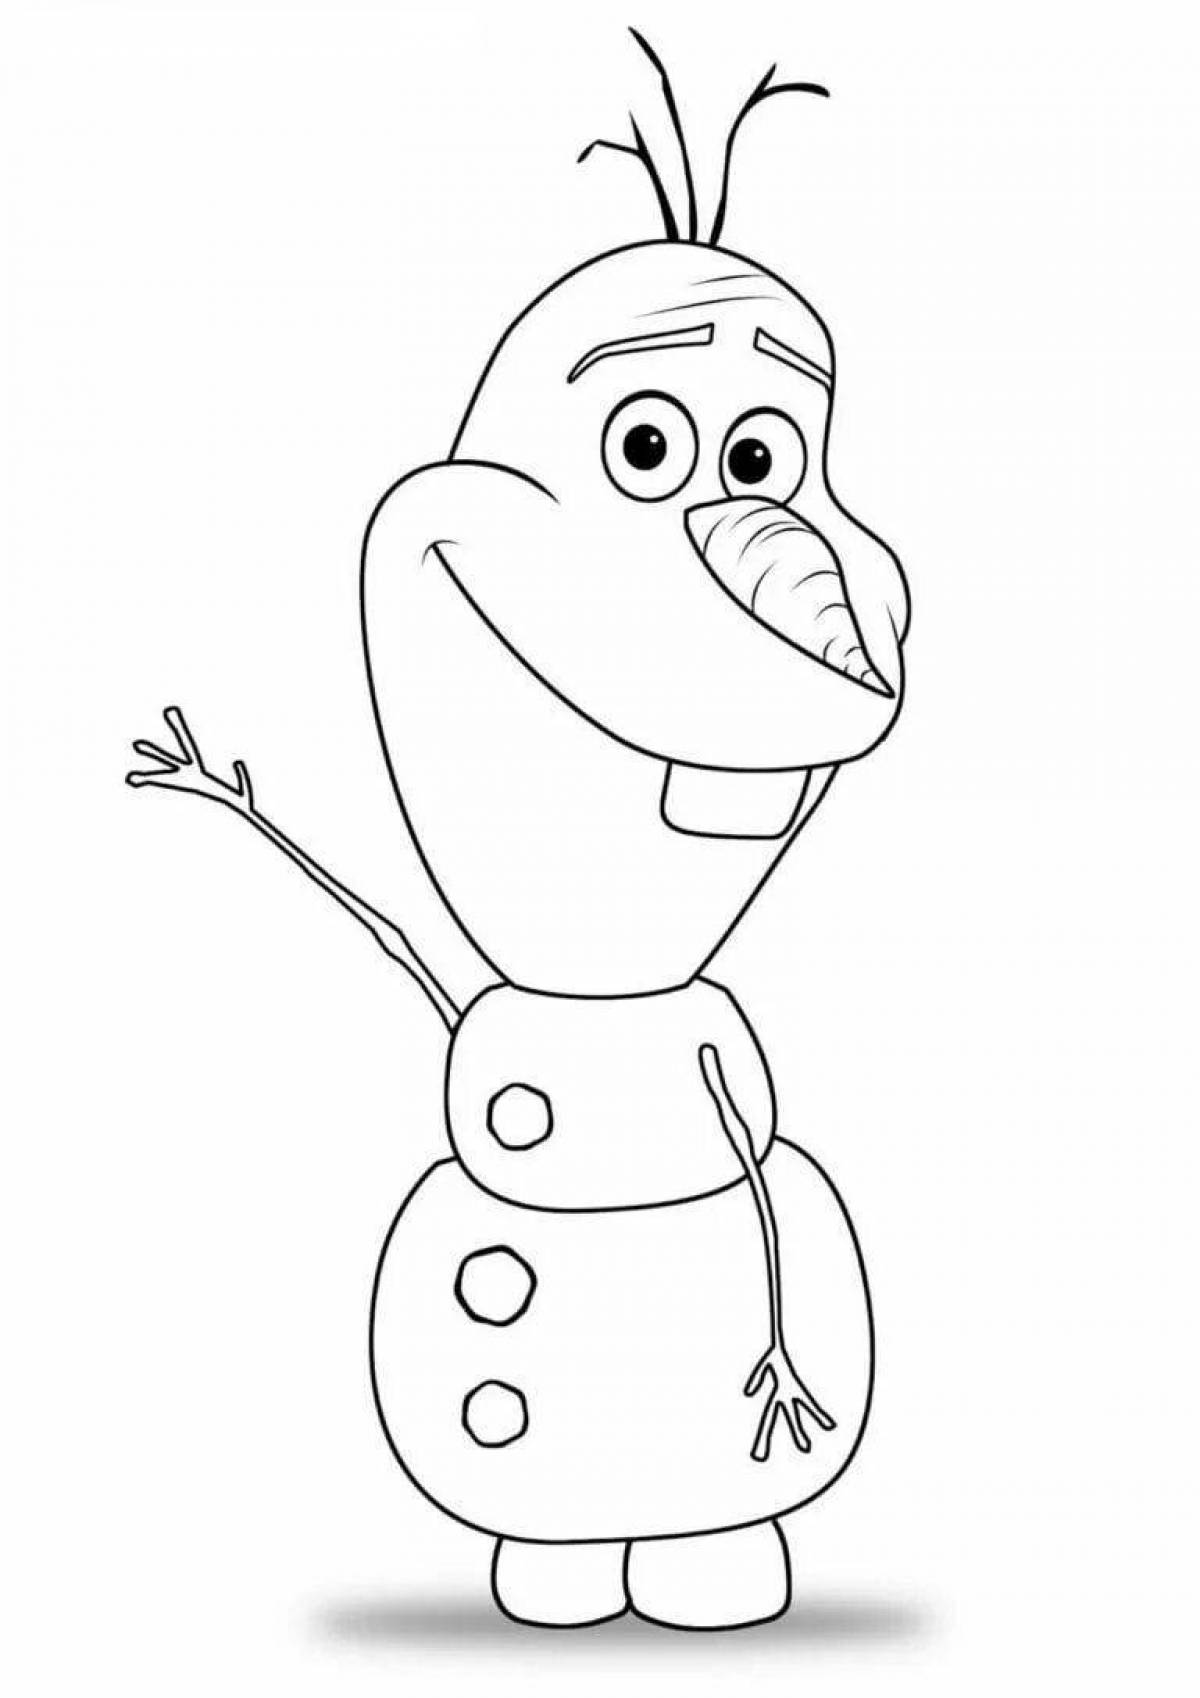 Olaf the snowman #2